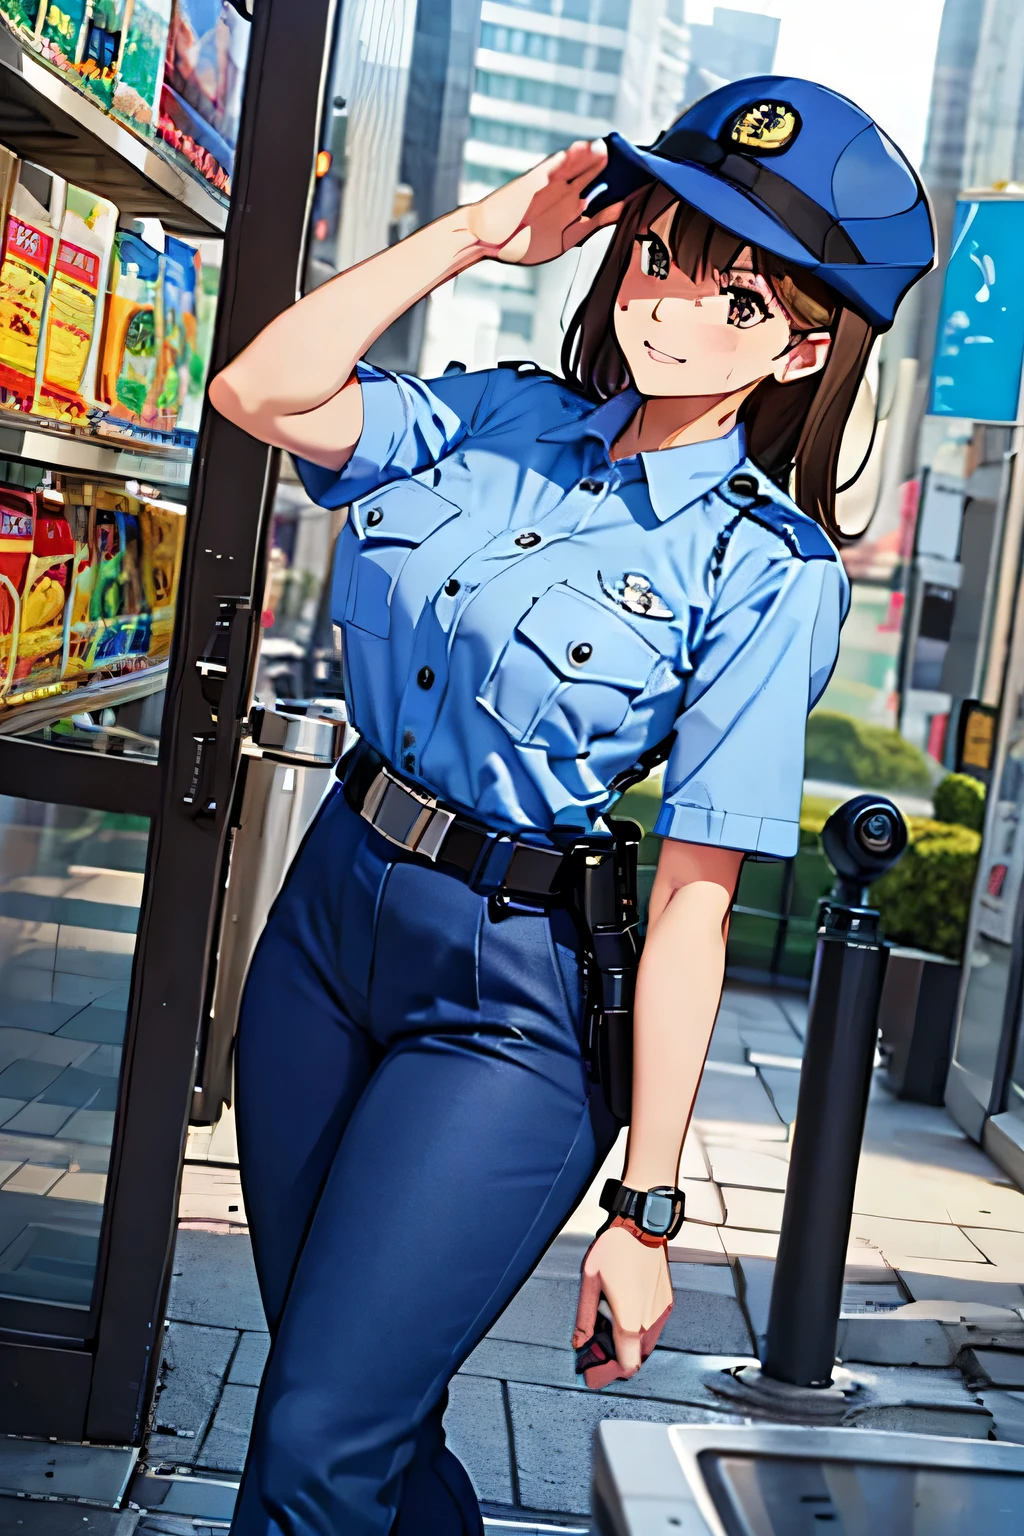 큰 가슴,경찰복, 하늘색 셔츠, 파란 바지, 가슴 주머니, 최고의 품질, 걸작,파란색 모자,검은 벨트,경찰,일본 경찰,갈색 머리